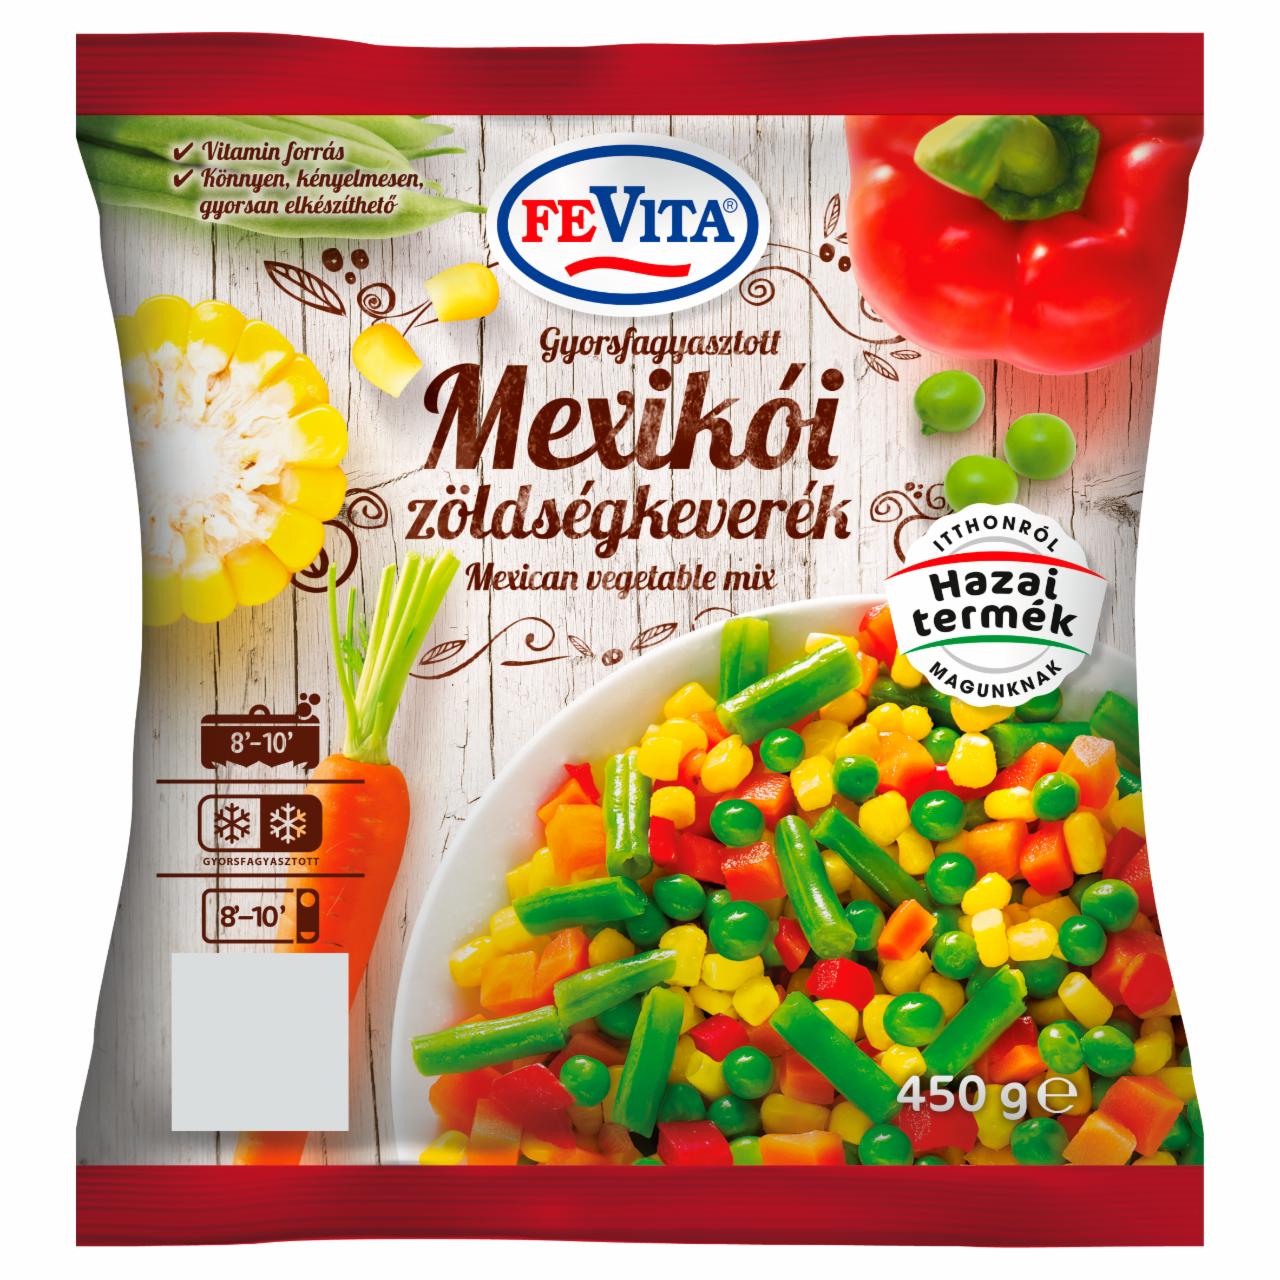 Képek - FeVita gyorsfagyasztott mexikói zöldségkeverék 450 g